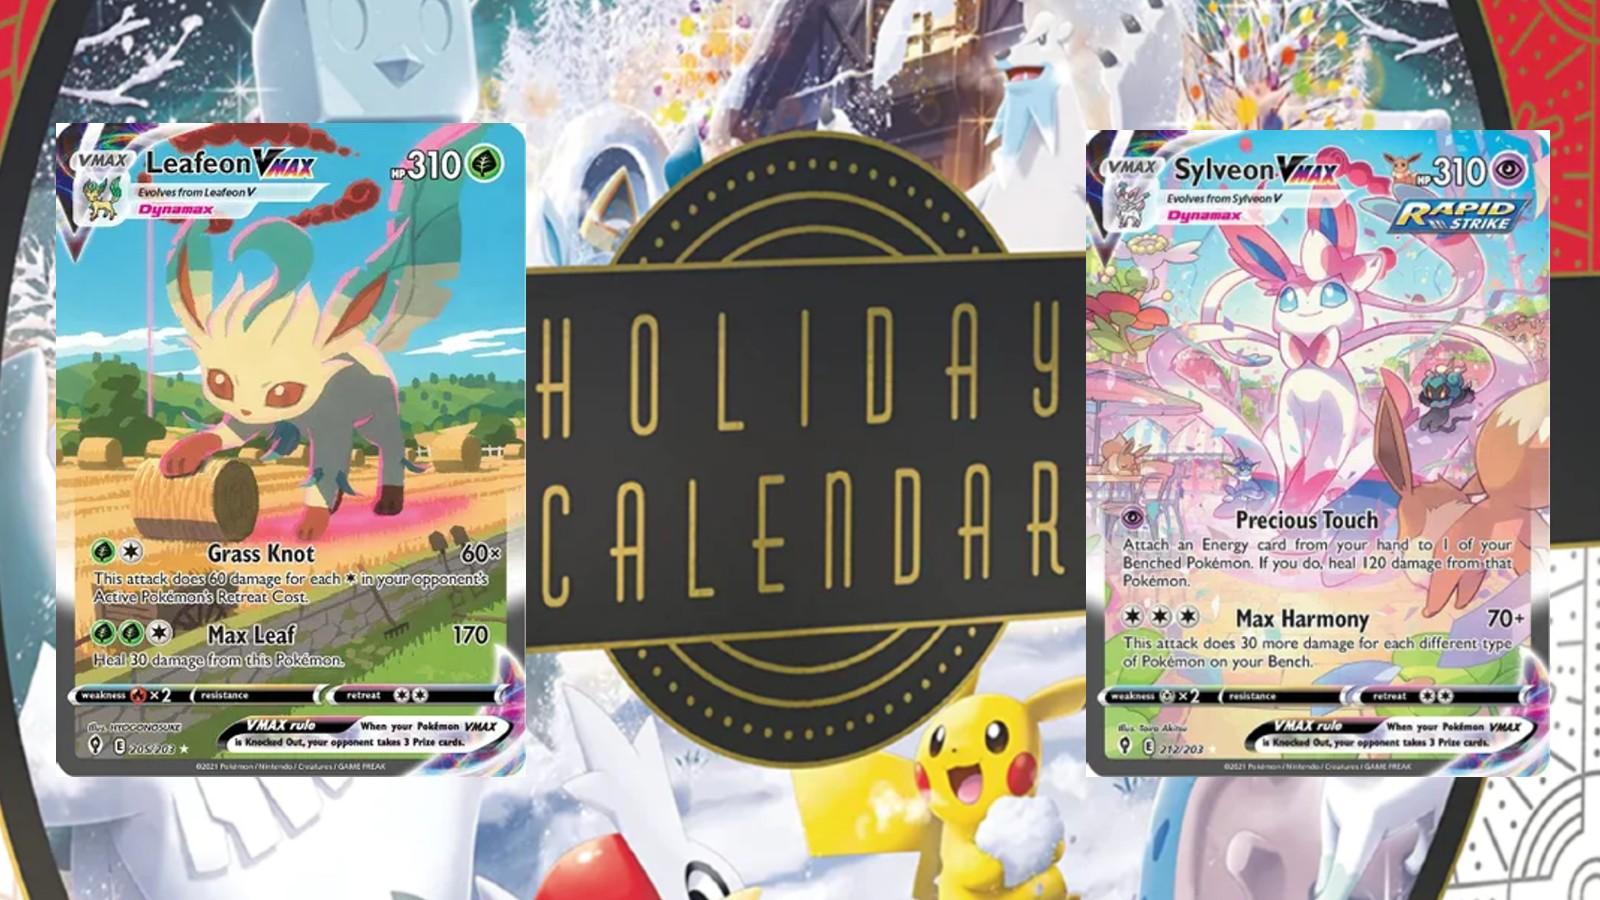 Pokemon TCG: Holiday Calendar 2023 Revealed for September! 